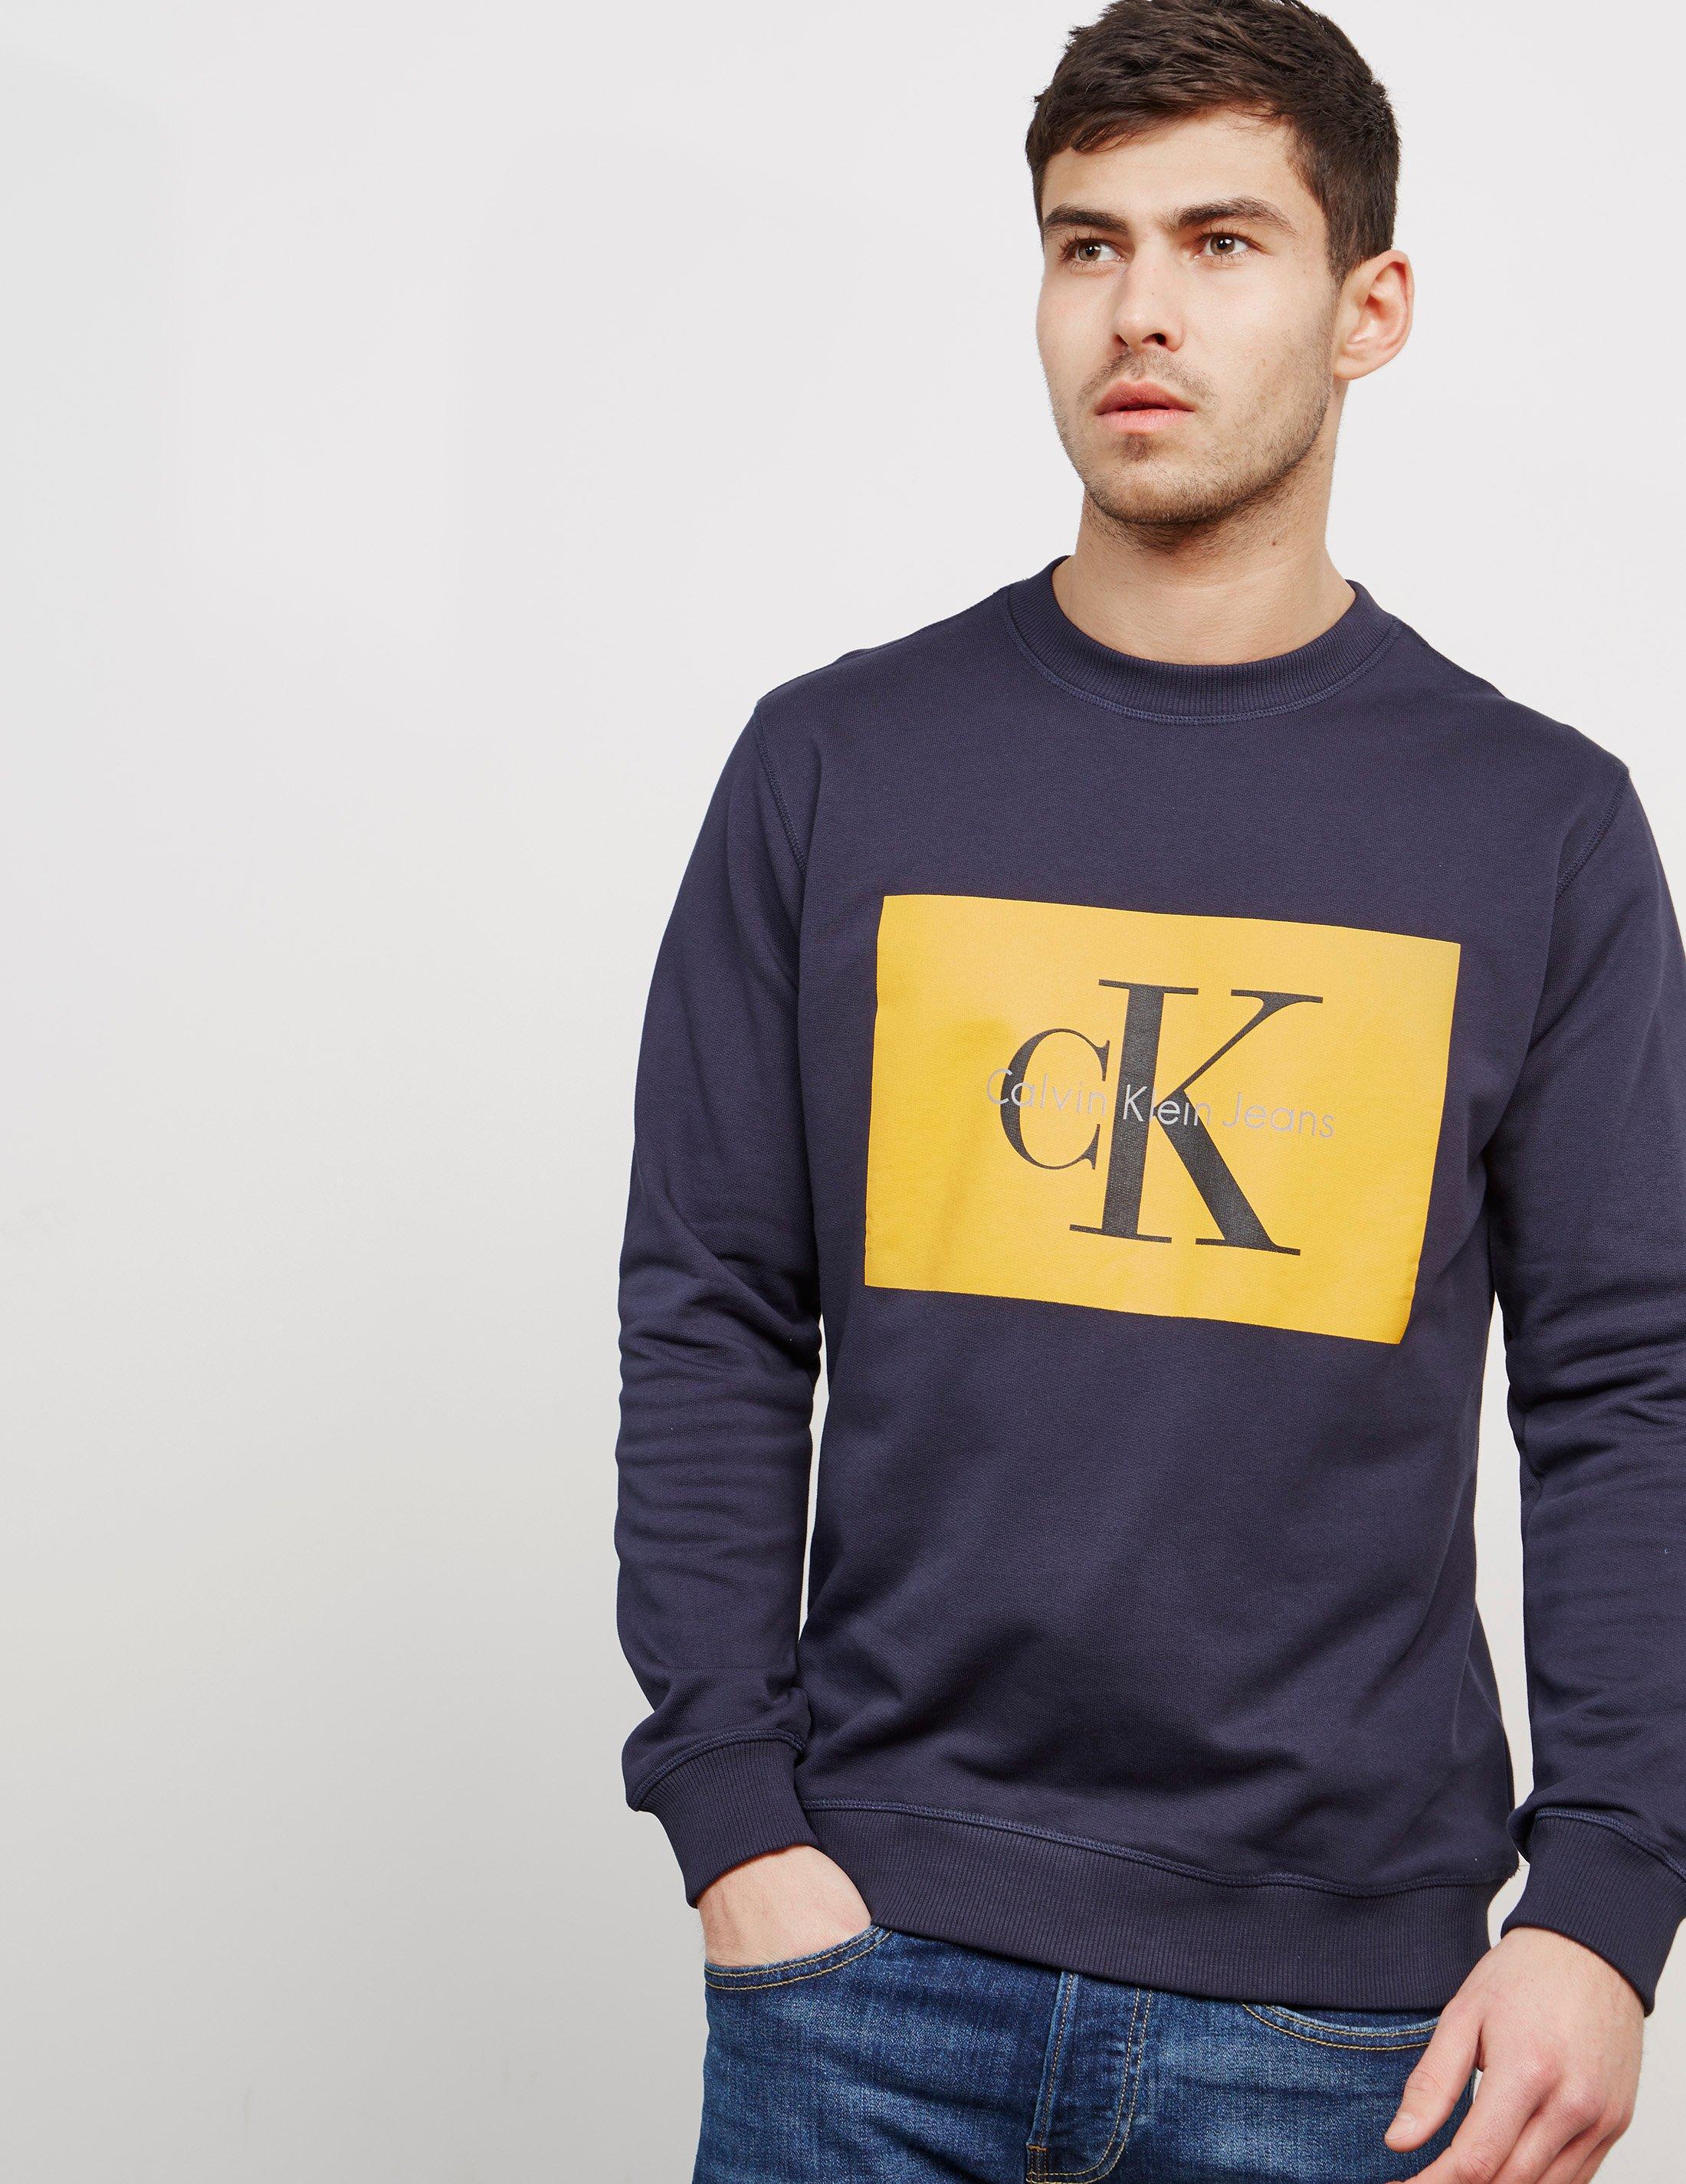 Jaar maak het plat Veel Calvin Klein Navy Sweatshirt Norway, SAVE 58% - raptorunderlayment.com